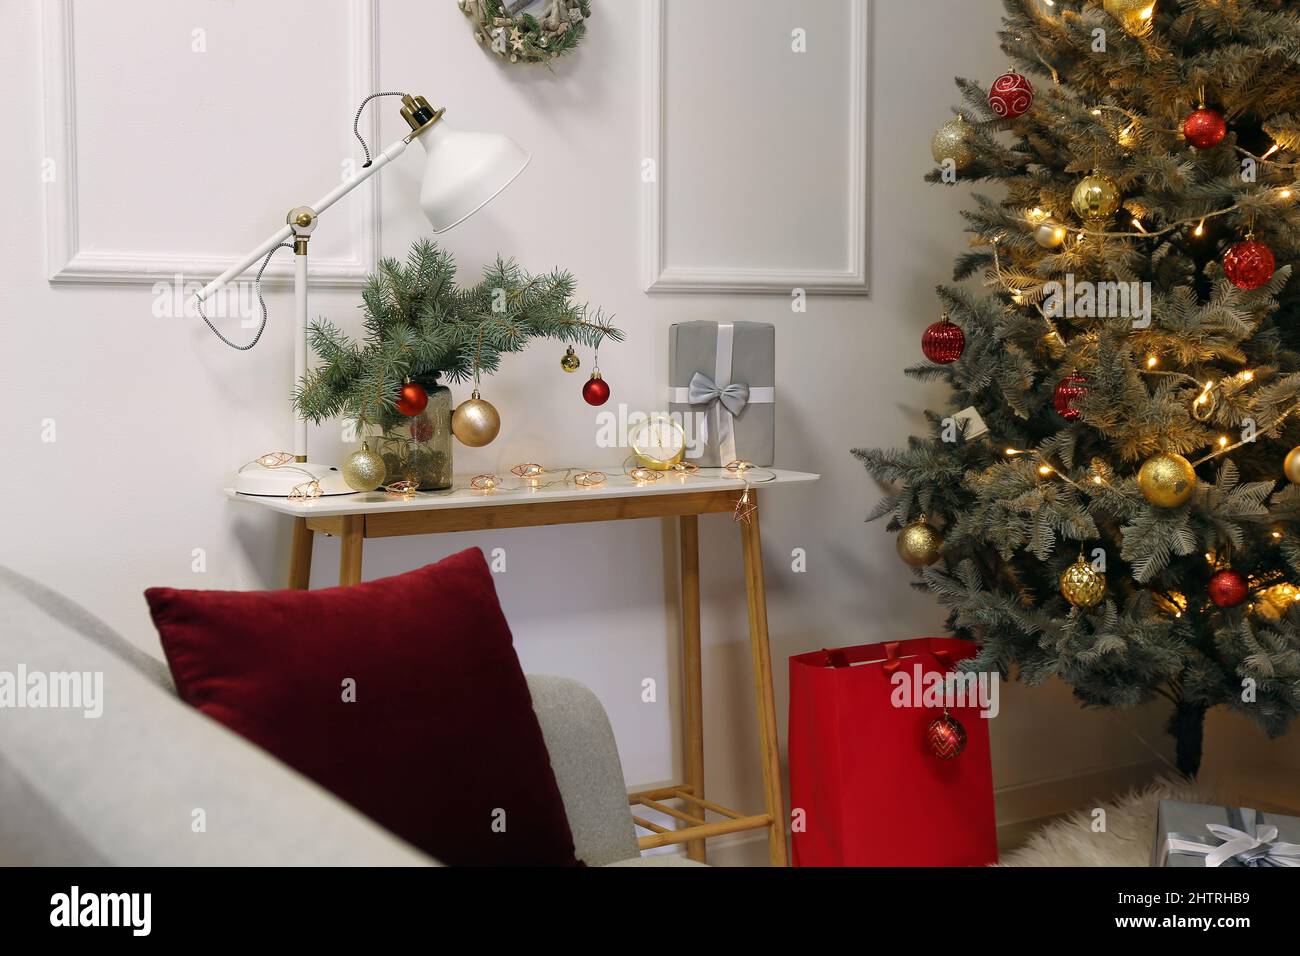 Vase mit Tannenzweigen, Weihnachtskugeln, Lampe und Geschenk auf dem Tisch  im Zimmer Stockfotografie - Alamy